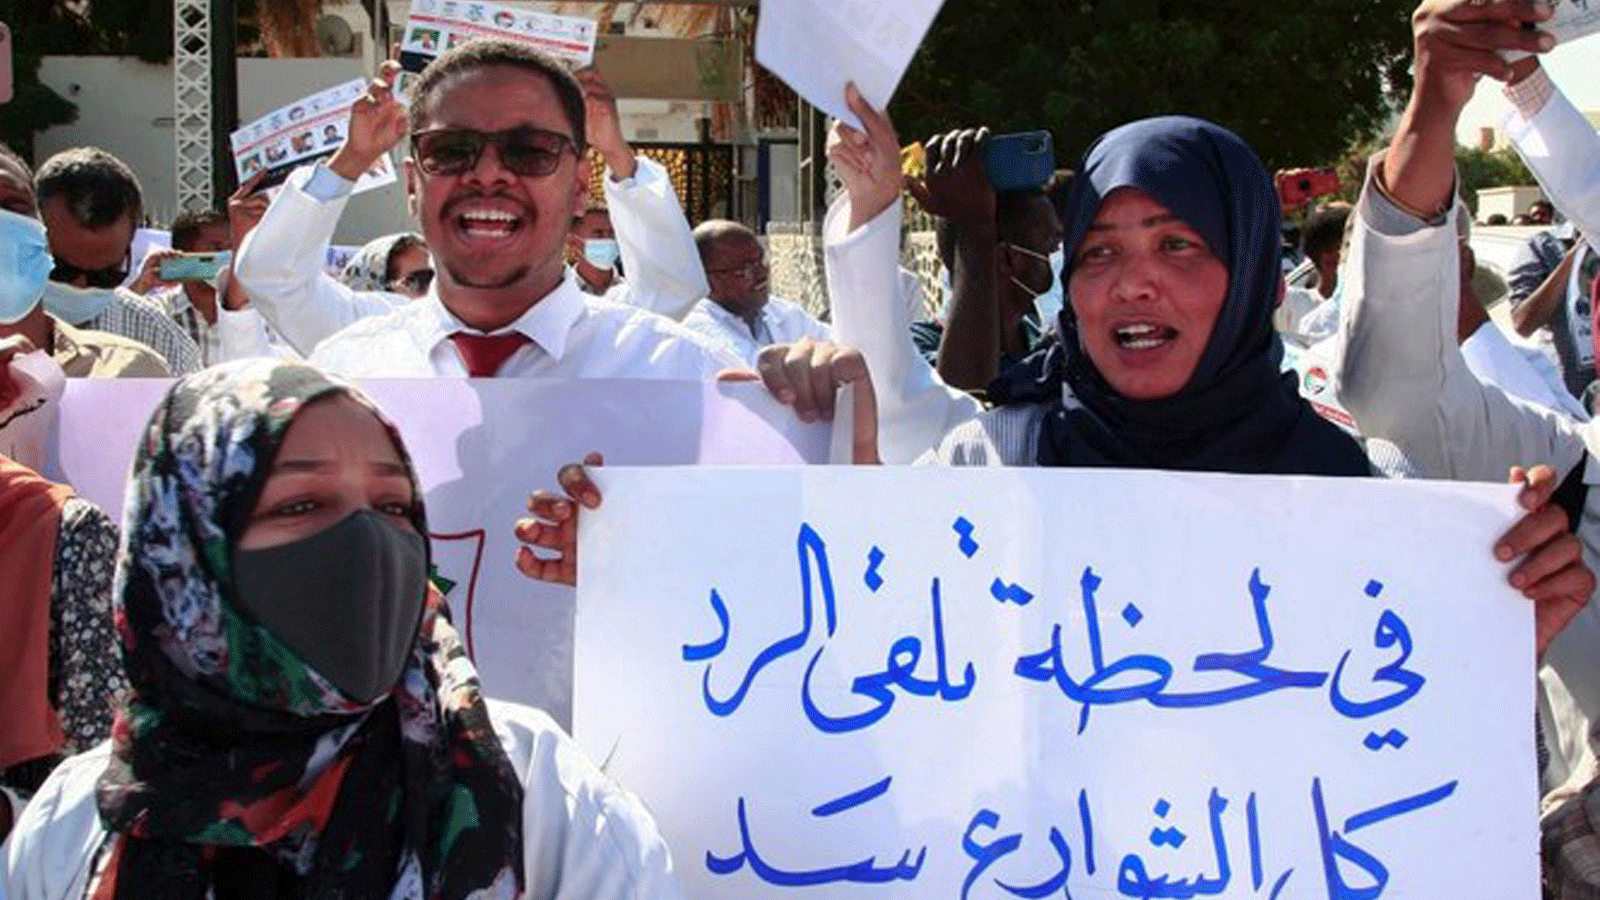 تظاهر عشرات الأطباء السودانيين في الخرطوم في 16 يناير/ كانون الثاني 2022 للتنديد بهجمات قوات الأمن ضد الكوادر الطبية والأطباء خلال مسيرات مؤيدة للديمقراطية معارضة للانقلاب العسكري في أكتوبر/ تشرين الأول 2021